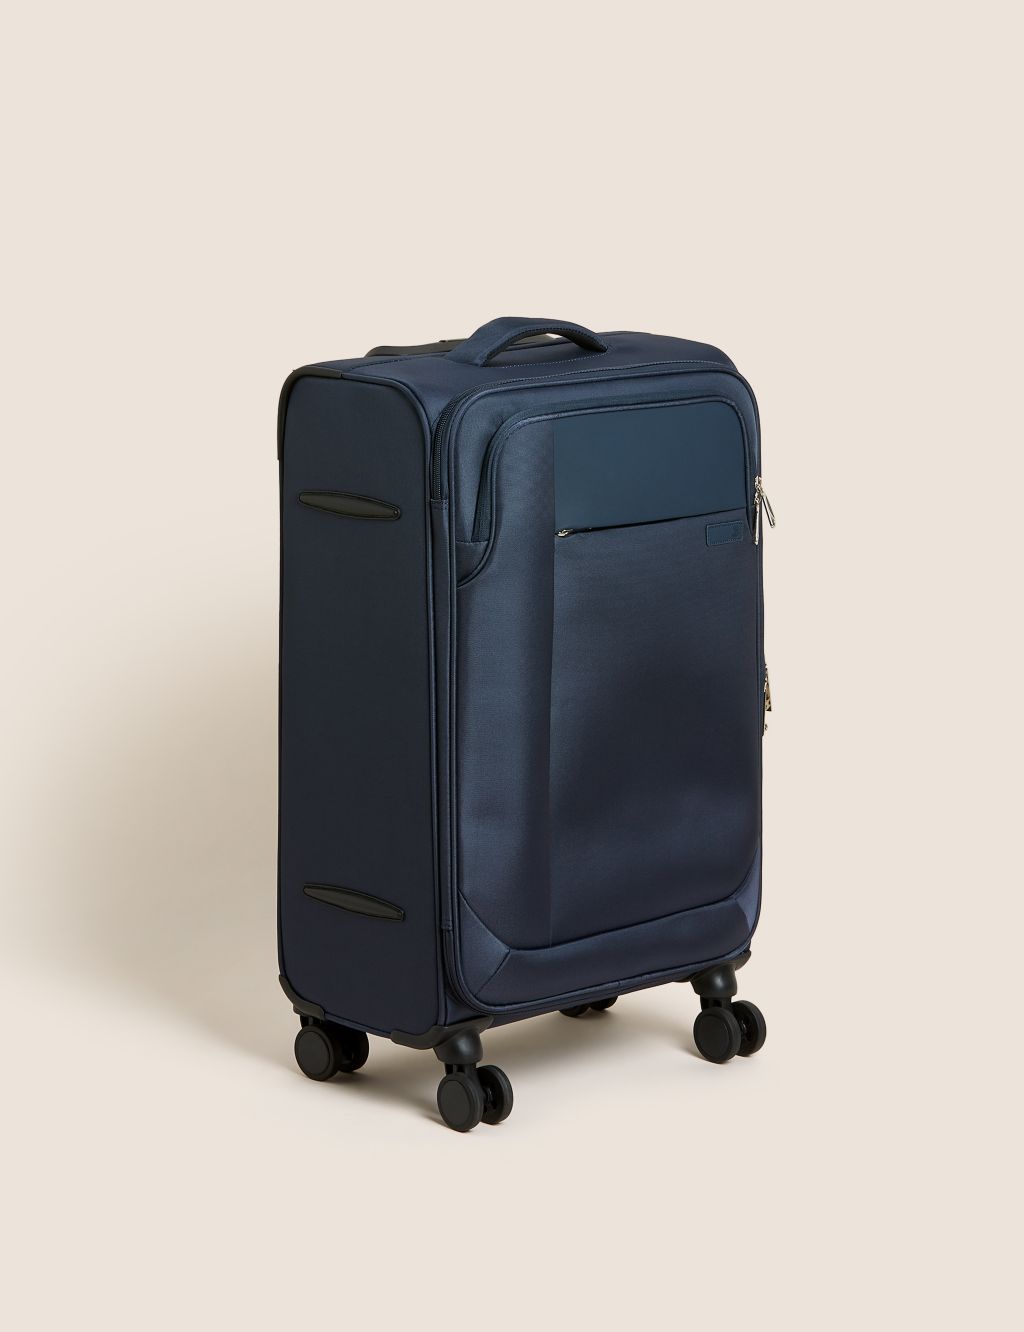 Lyon 4 Wheel Soft Medium Suitcase image 1